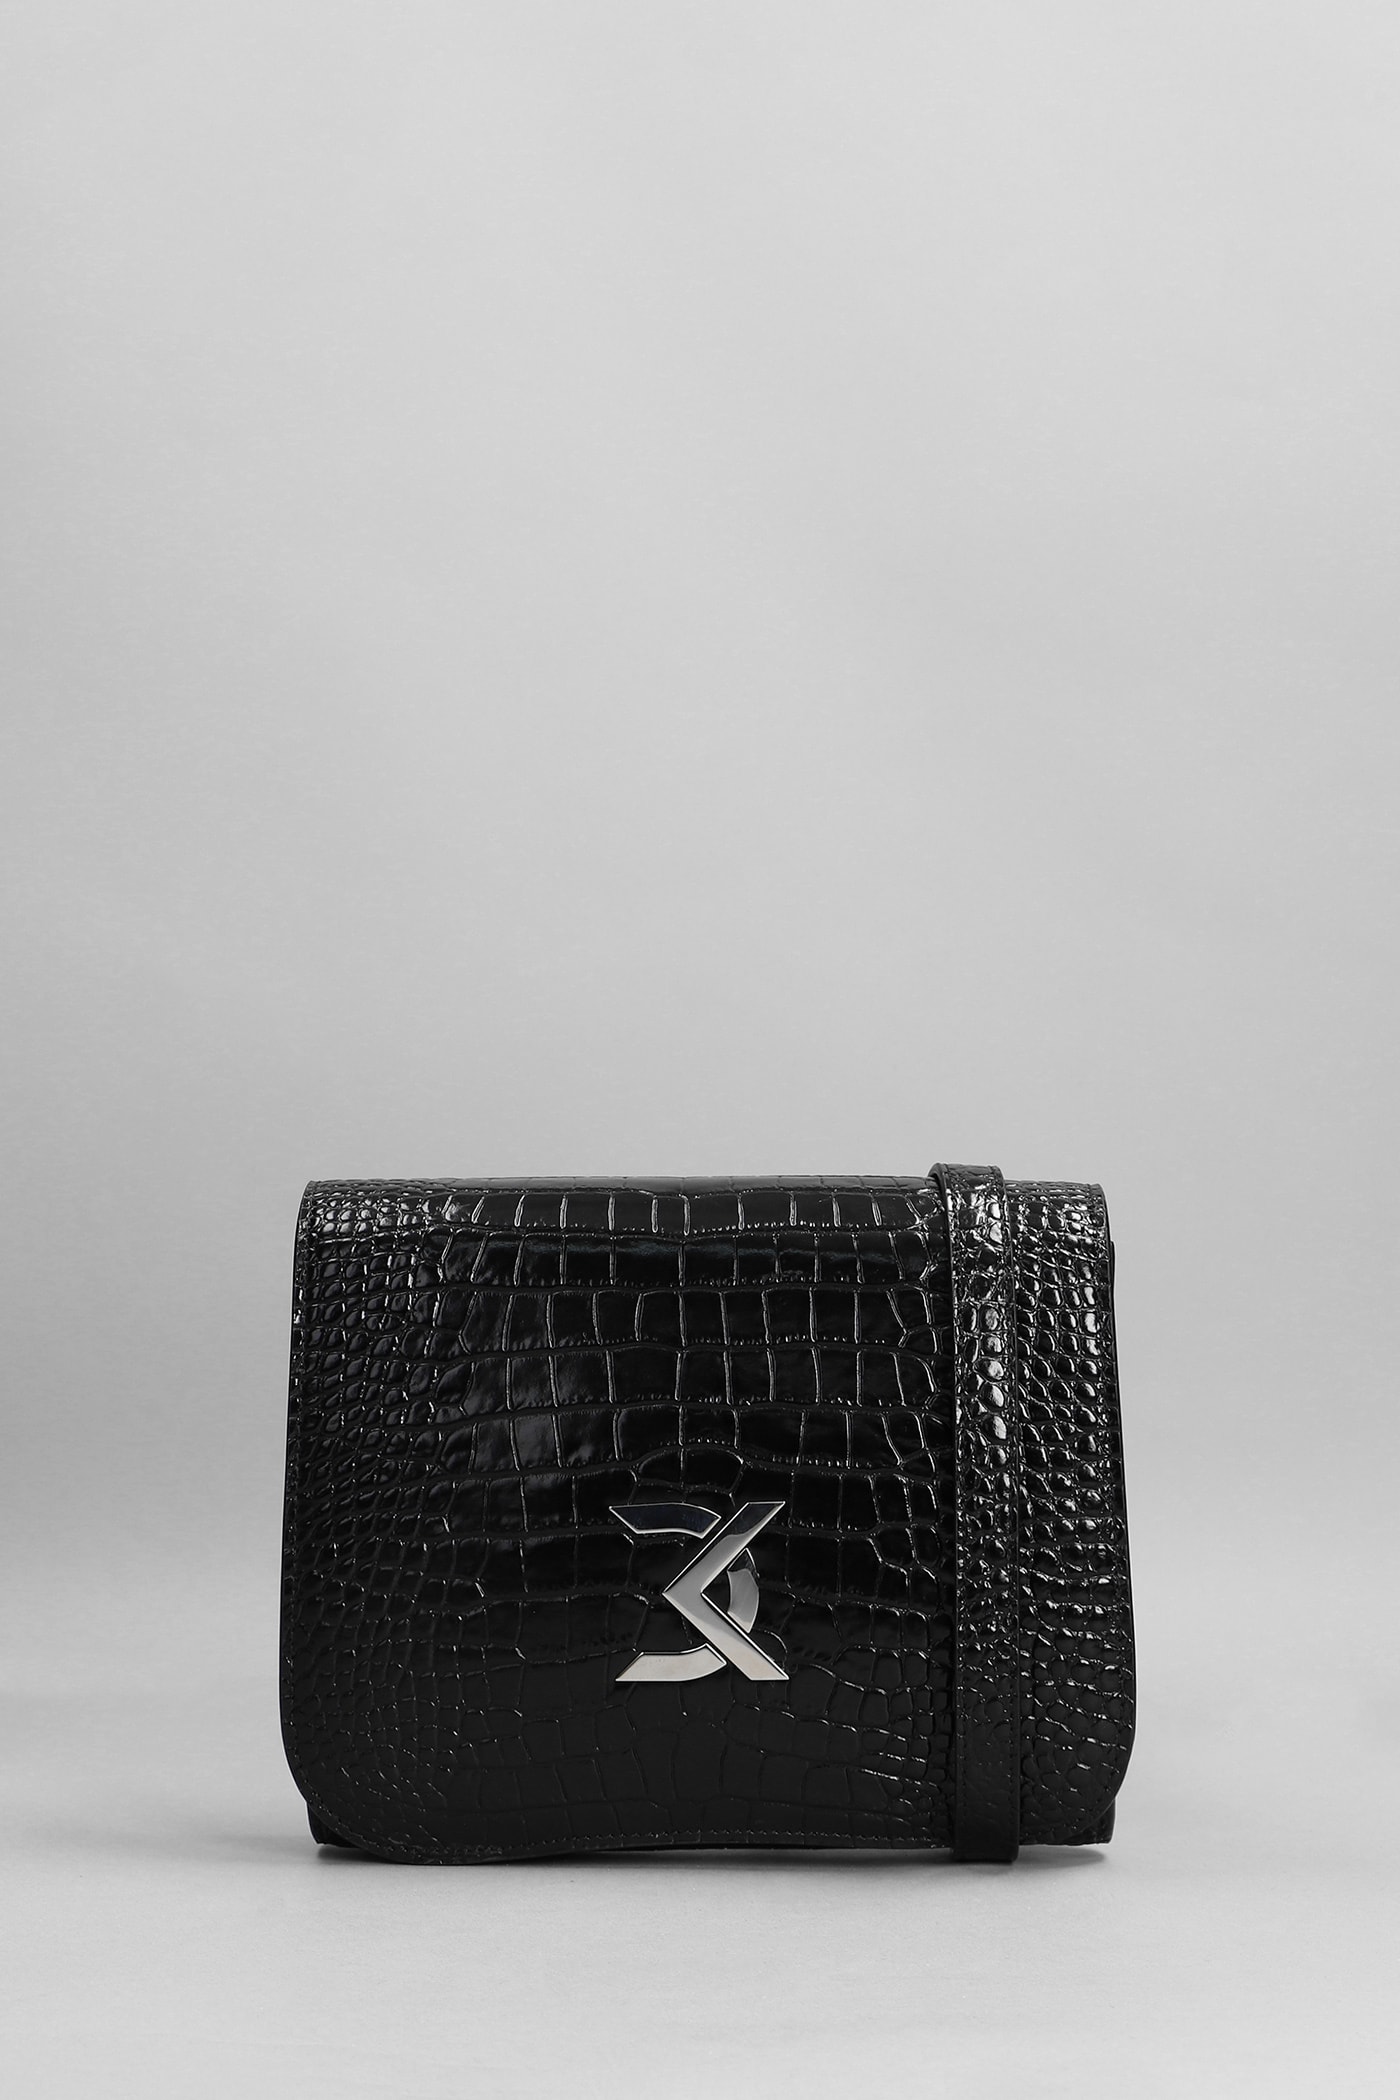 David Koma Shoulder Bag In Black Leather